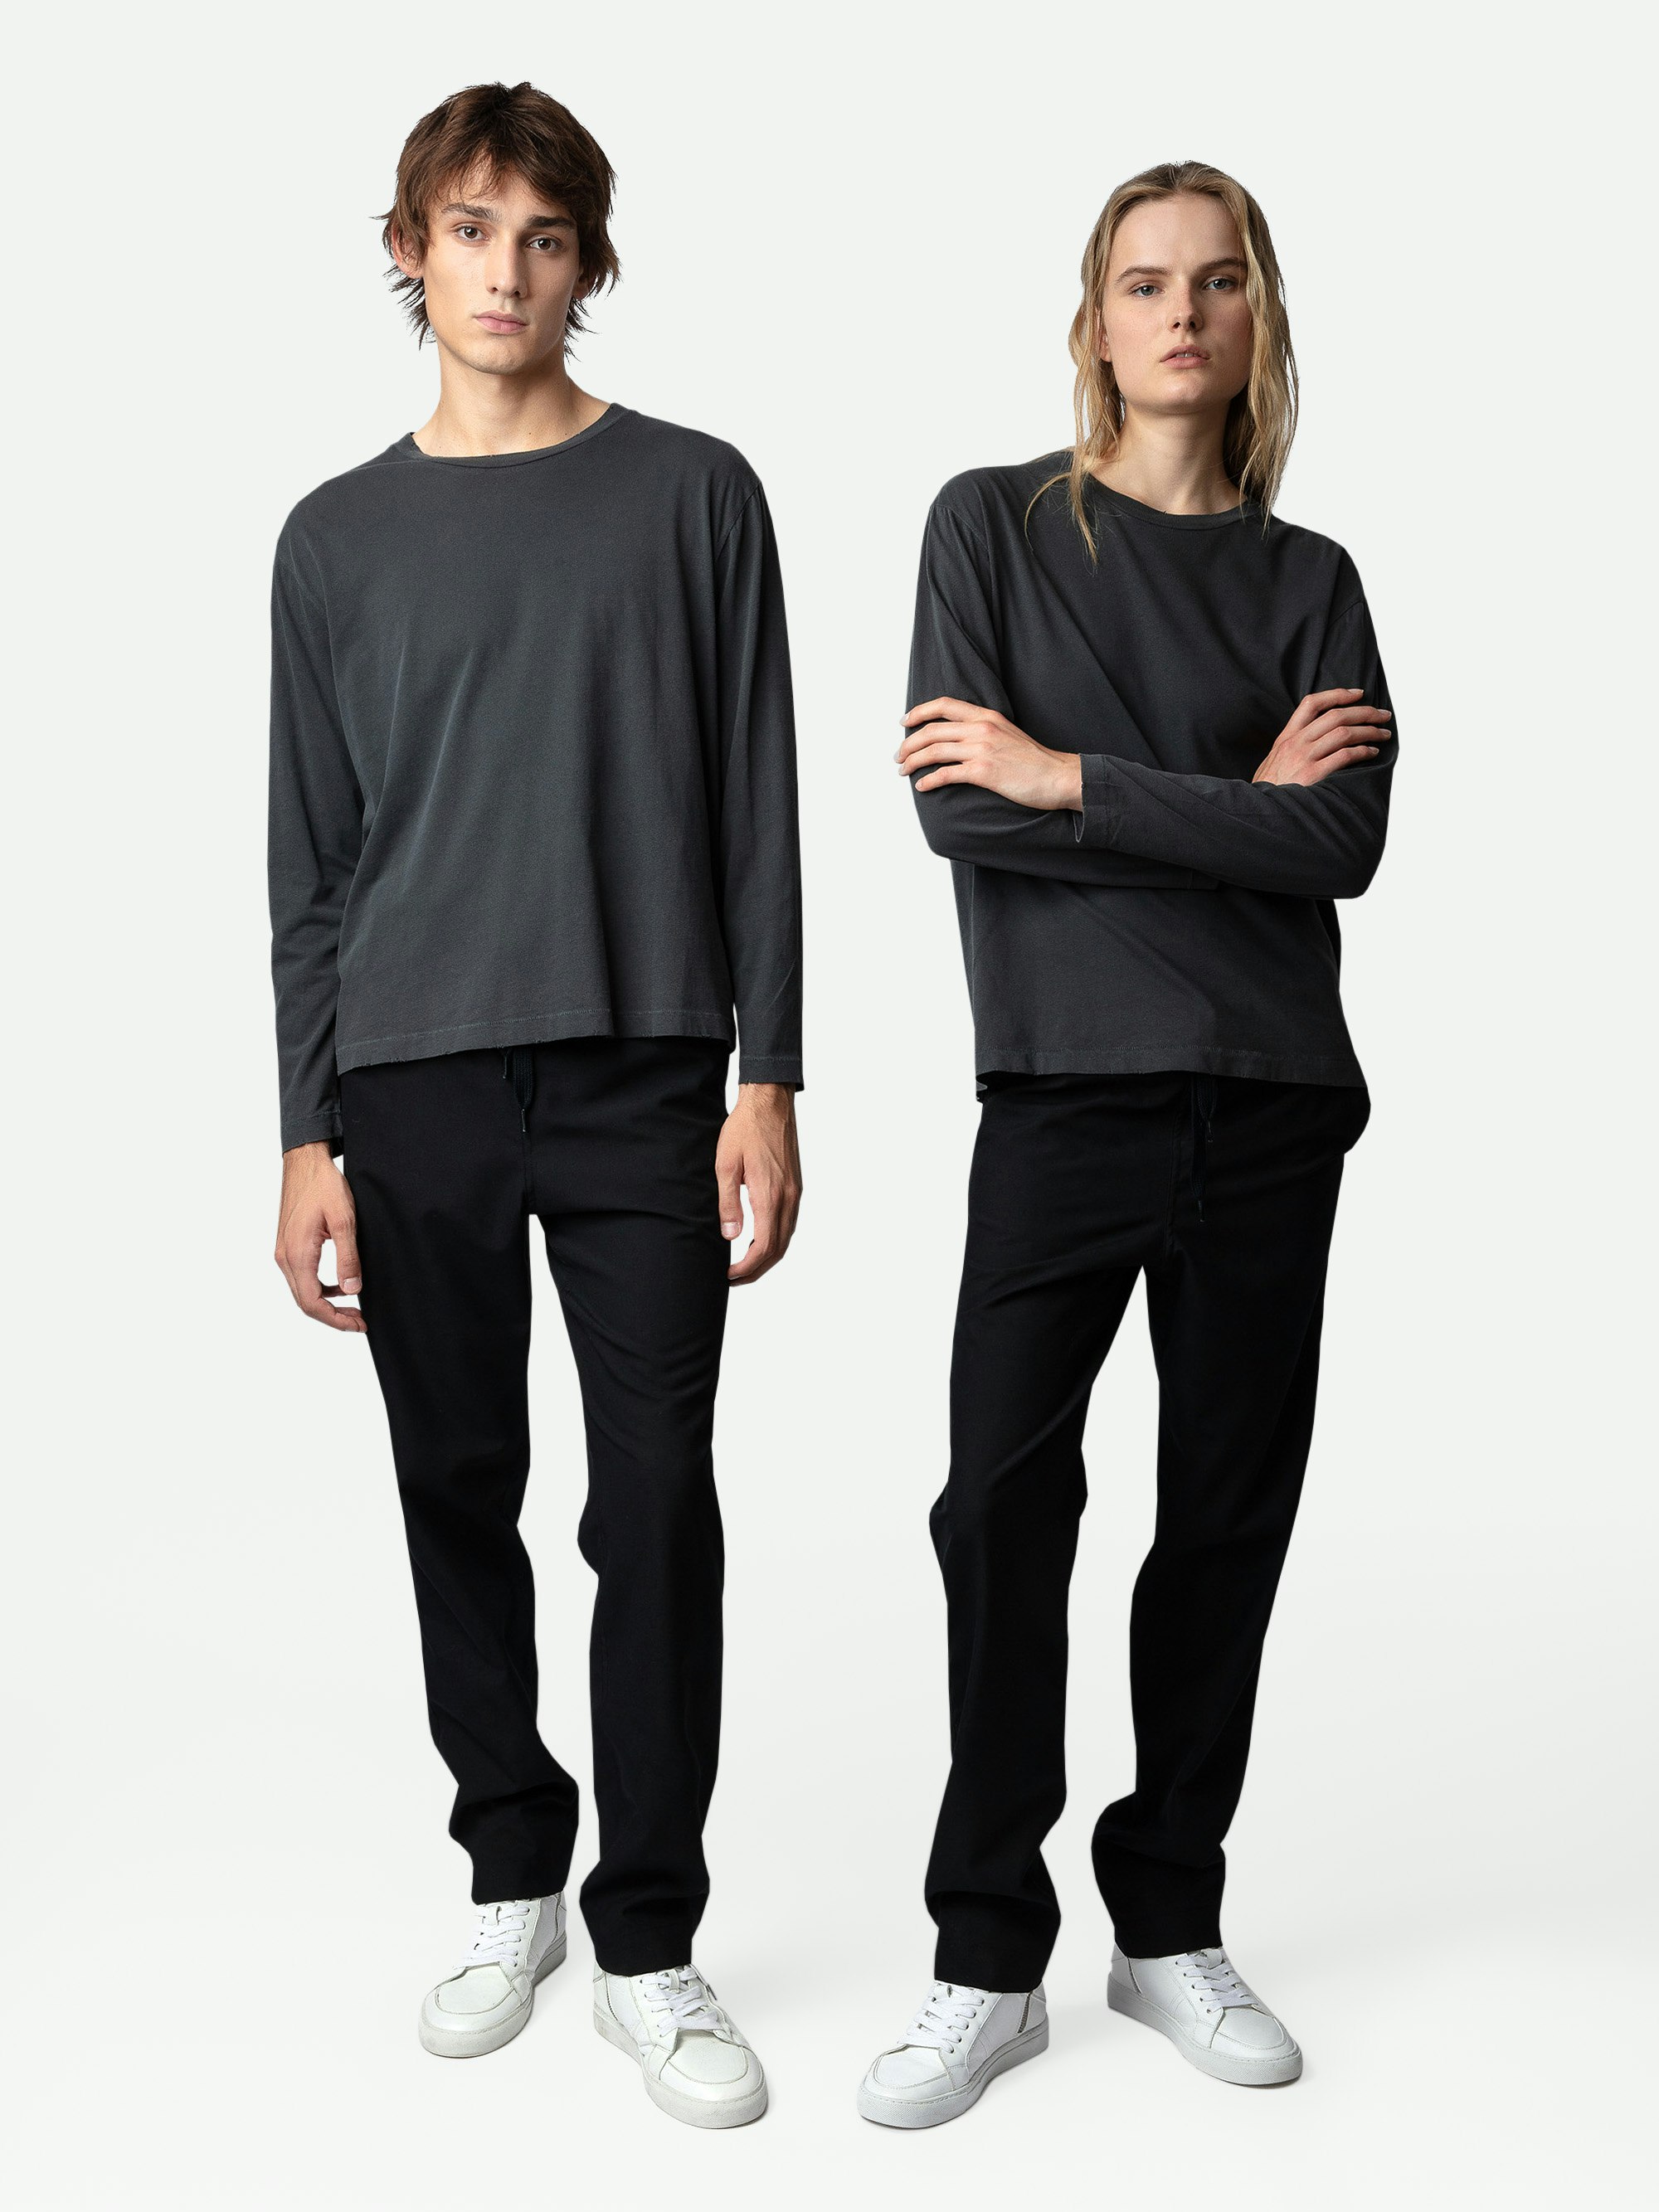 T-shirt Ellon - T-shirt unisex a maniche lunghe in cotone grigio scuro decorata con stemma Studio sul retro.